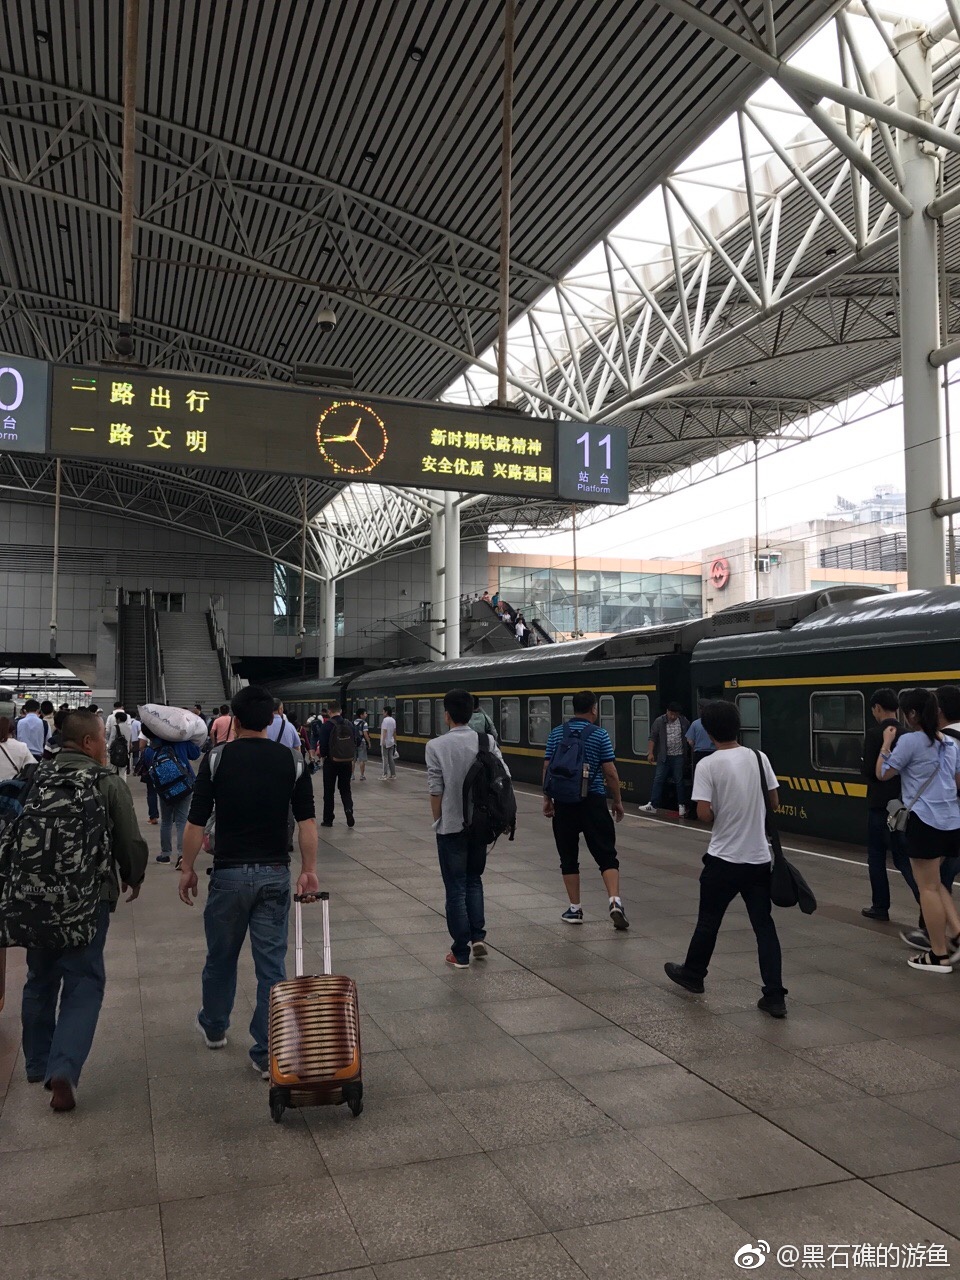 感觉上海站的站台和建筑都好破啊!跟其他两个火车站没法比